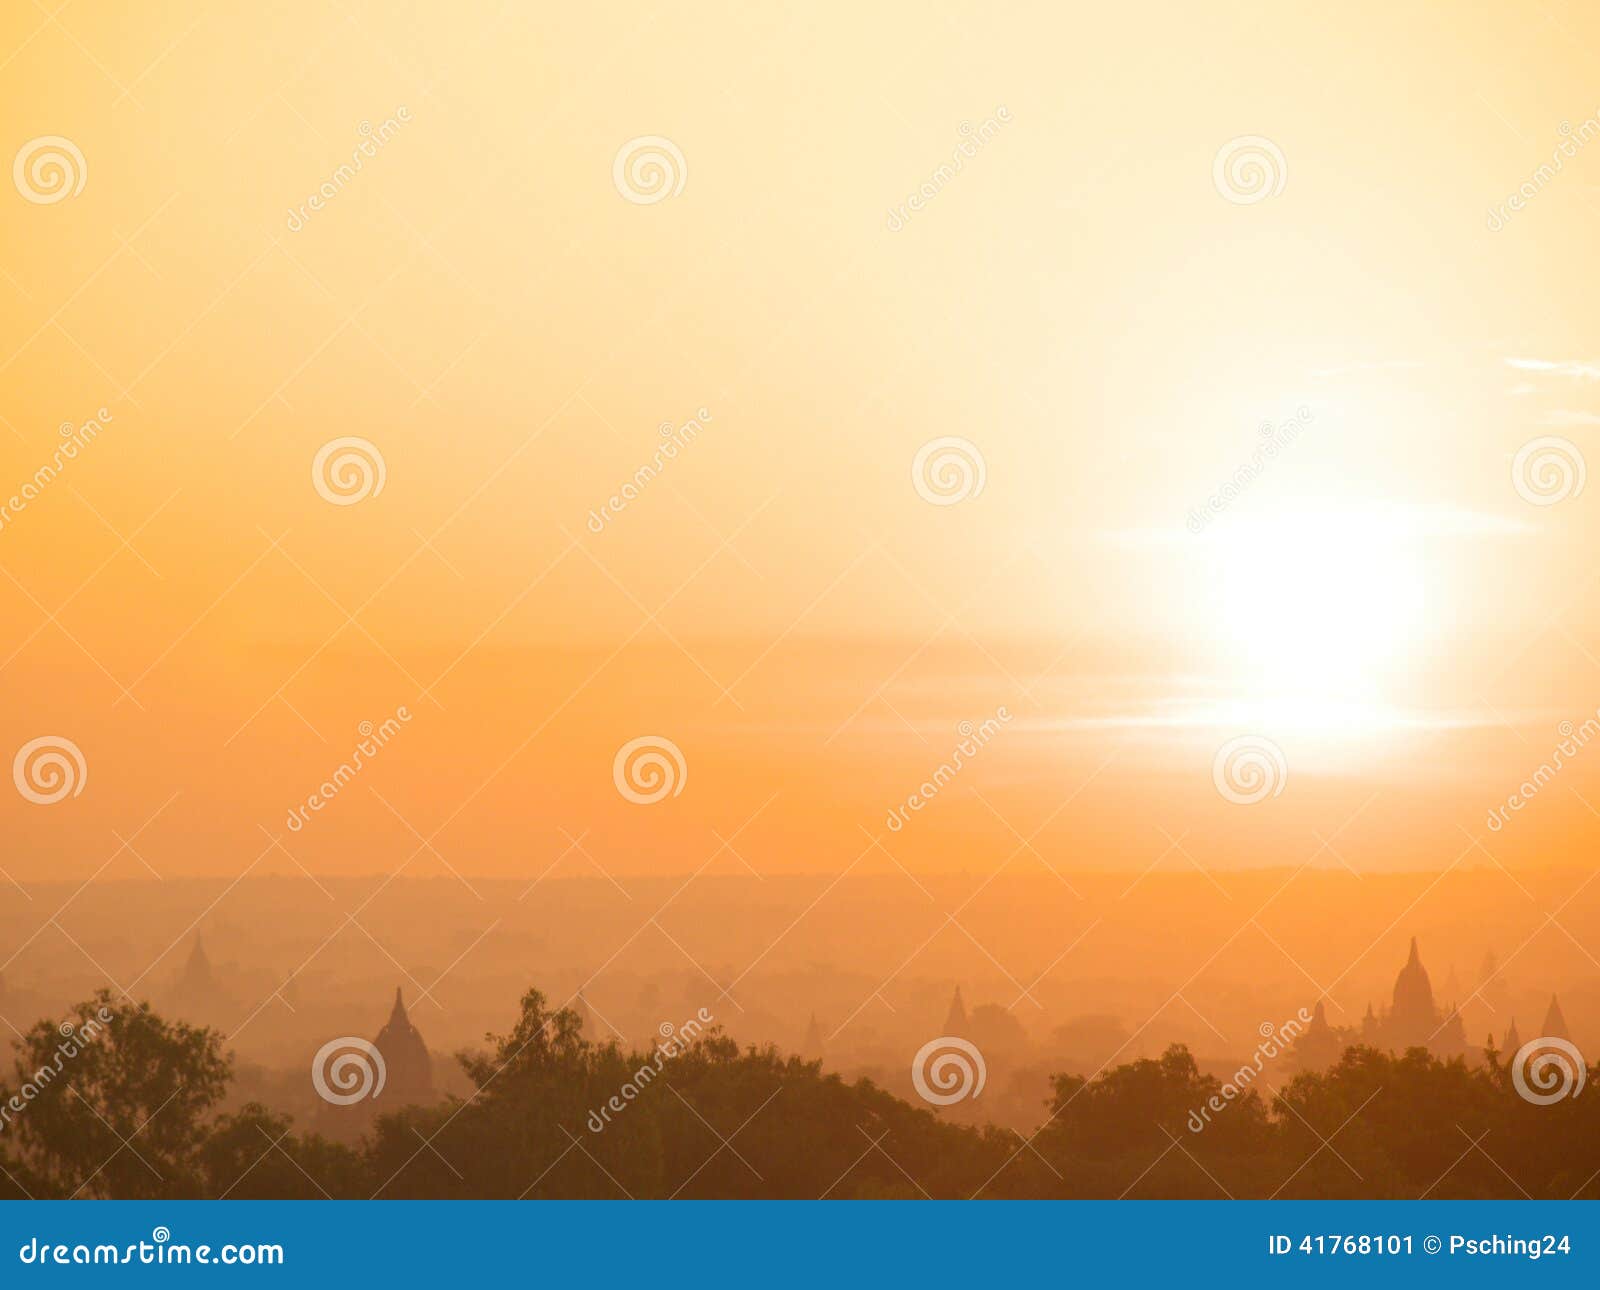 Nascer do sol com opinião dos pagodes de Bagan. Nascer do sol na opinião dos pagodes, Bagan, Myanmar